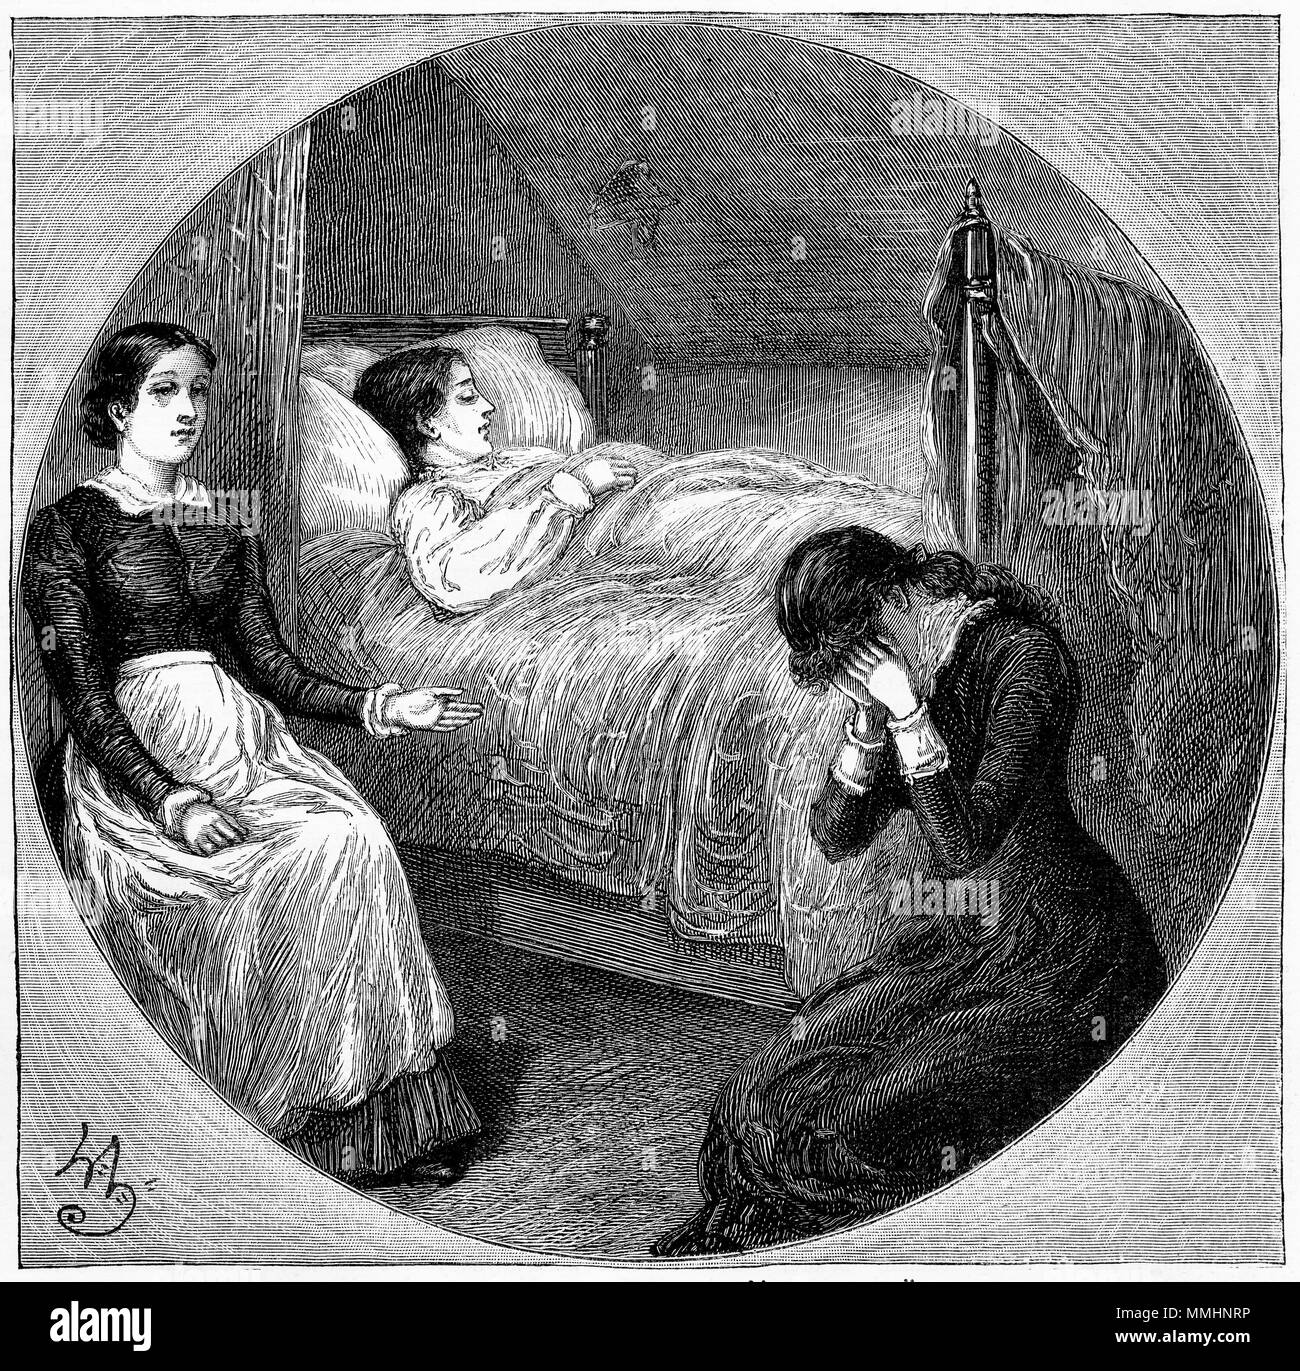 Grabado de una joven mujer llorando sobre la enfermedad de su amiga. A partir de un original grabado en la niña la propia revista en papel 1883. Foto de stock